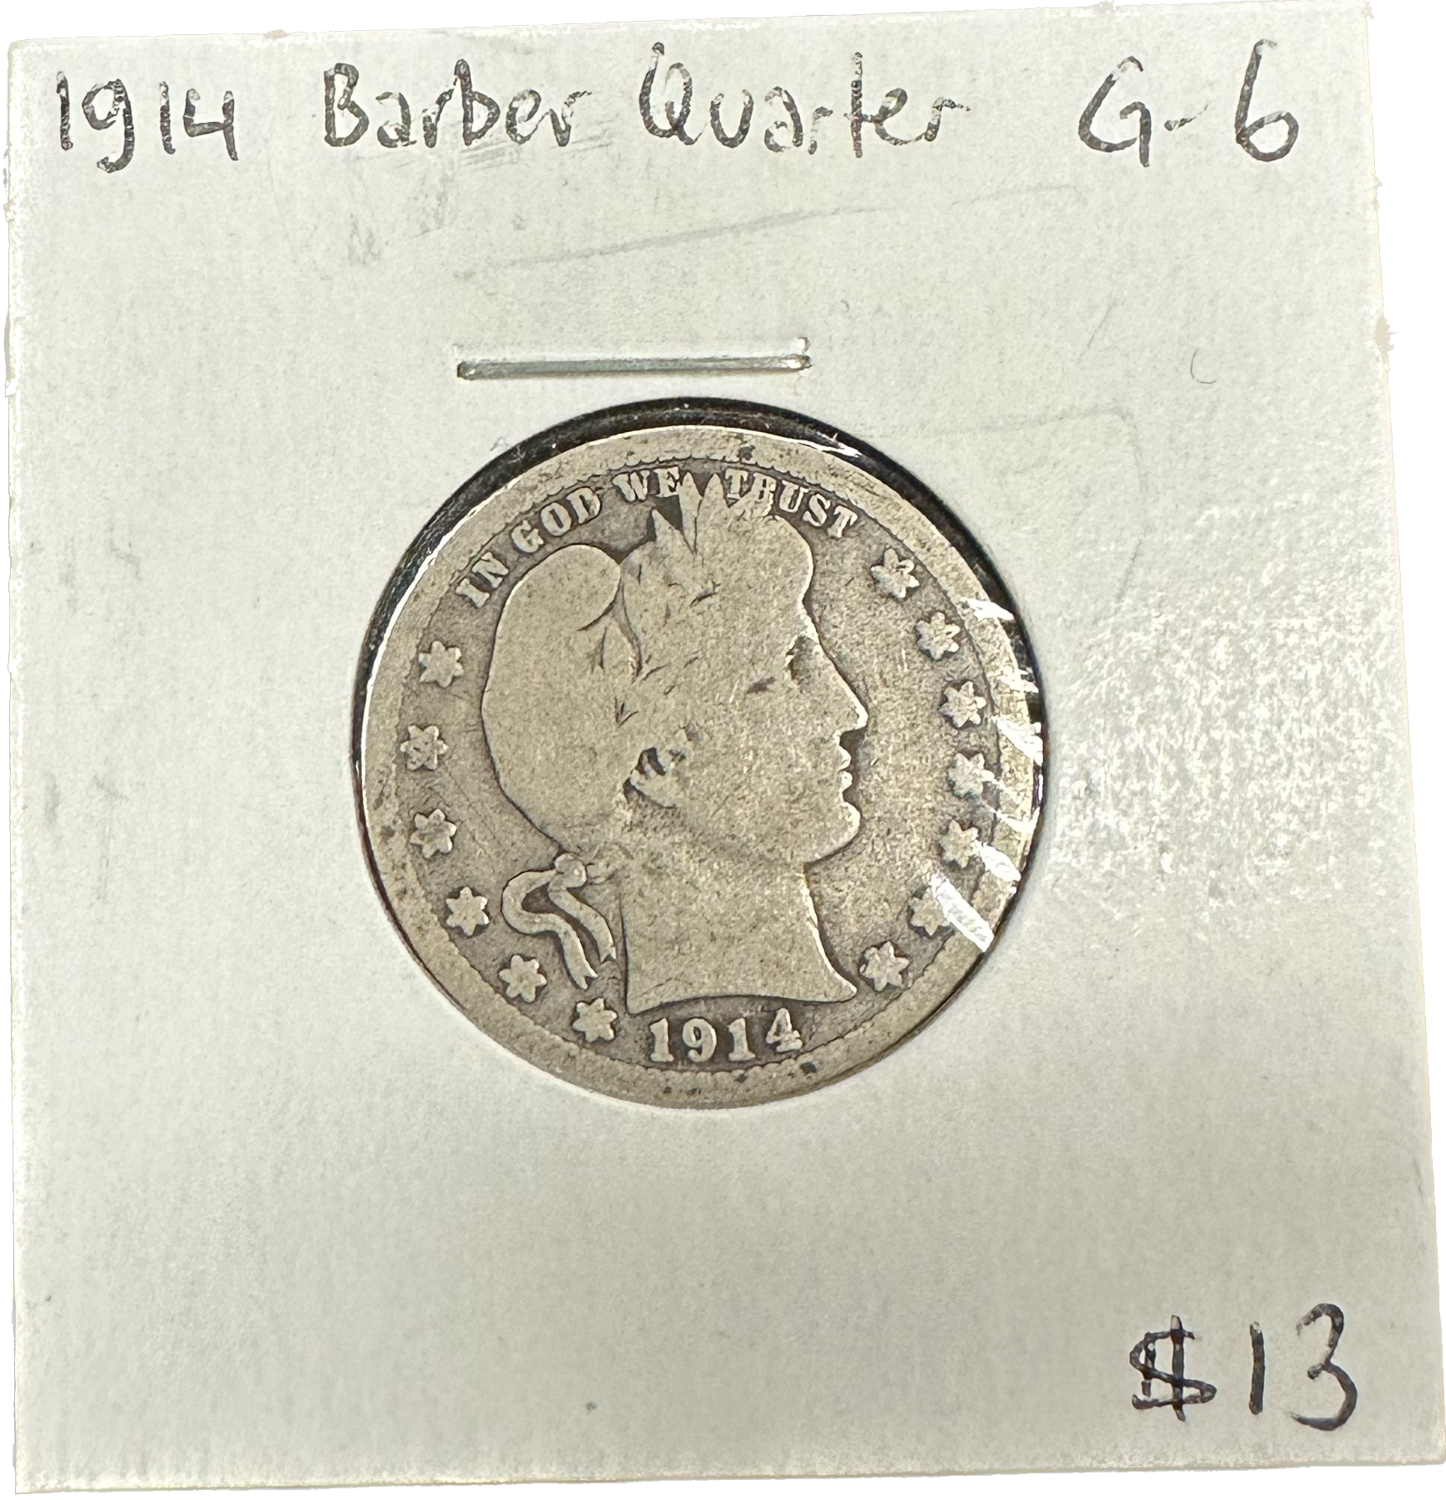 USA Barber Quarter 1914 G-6 Coin